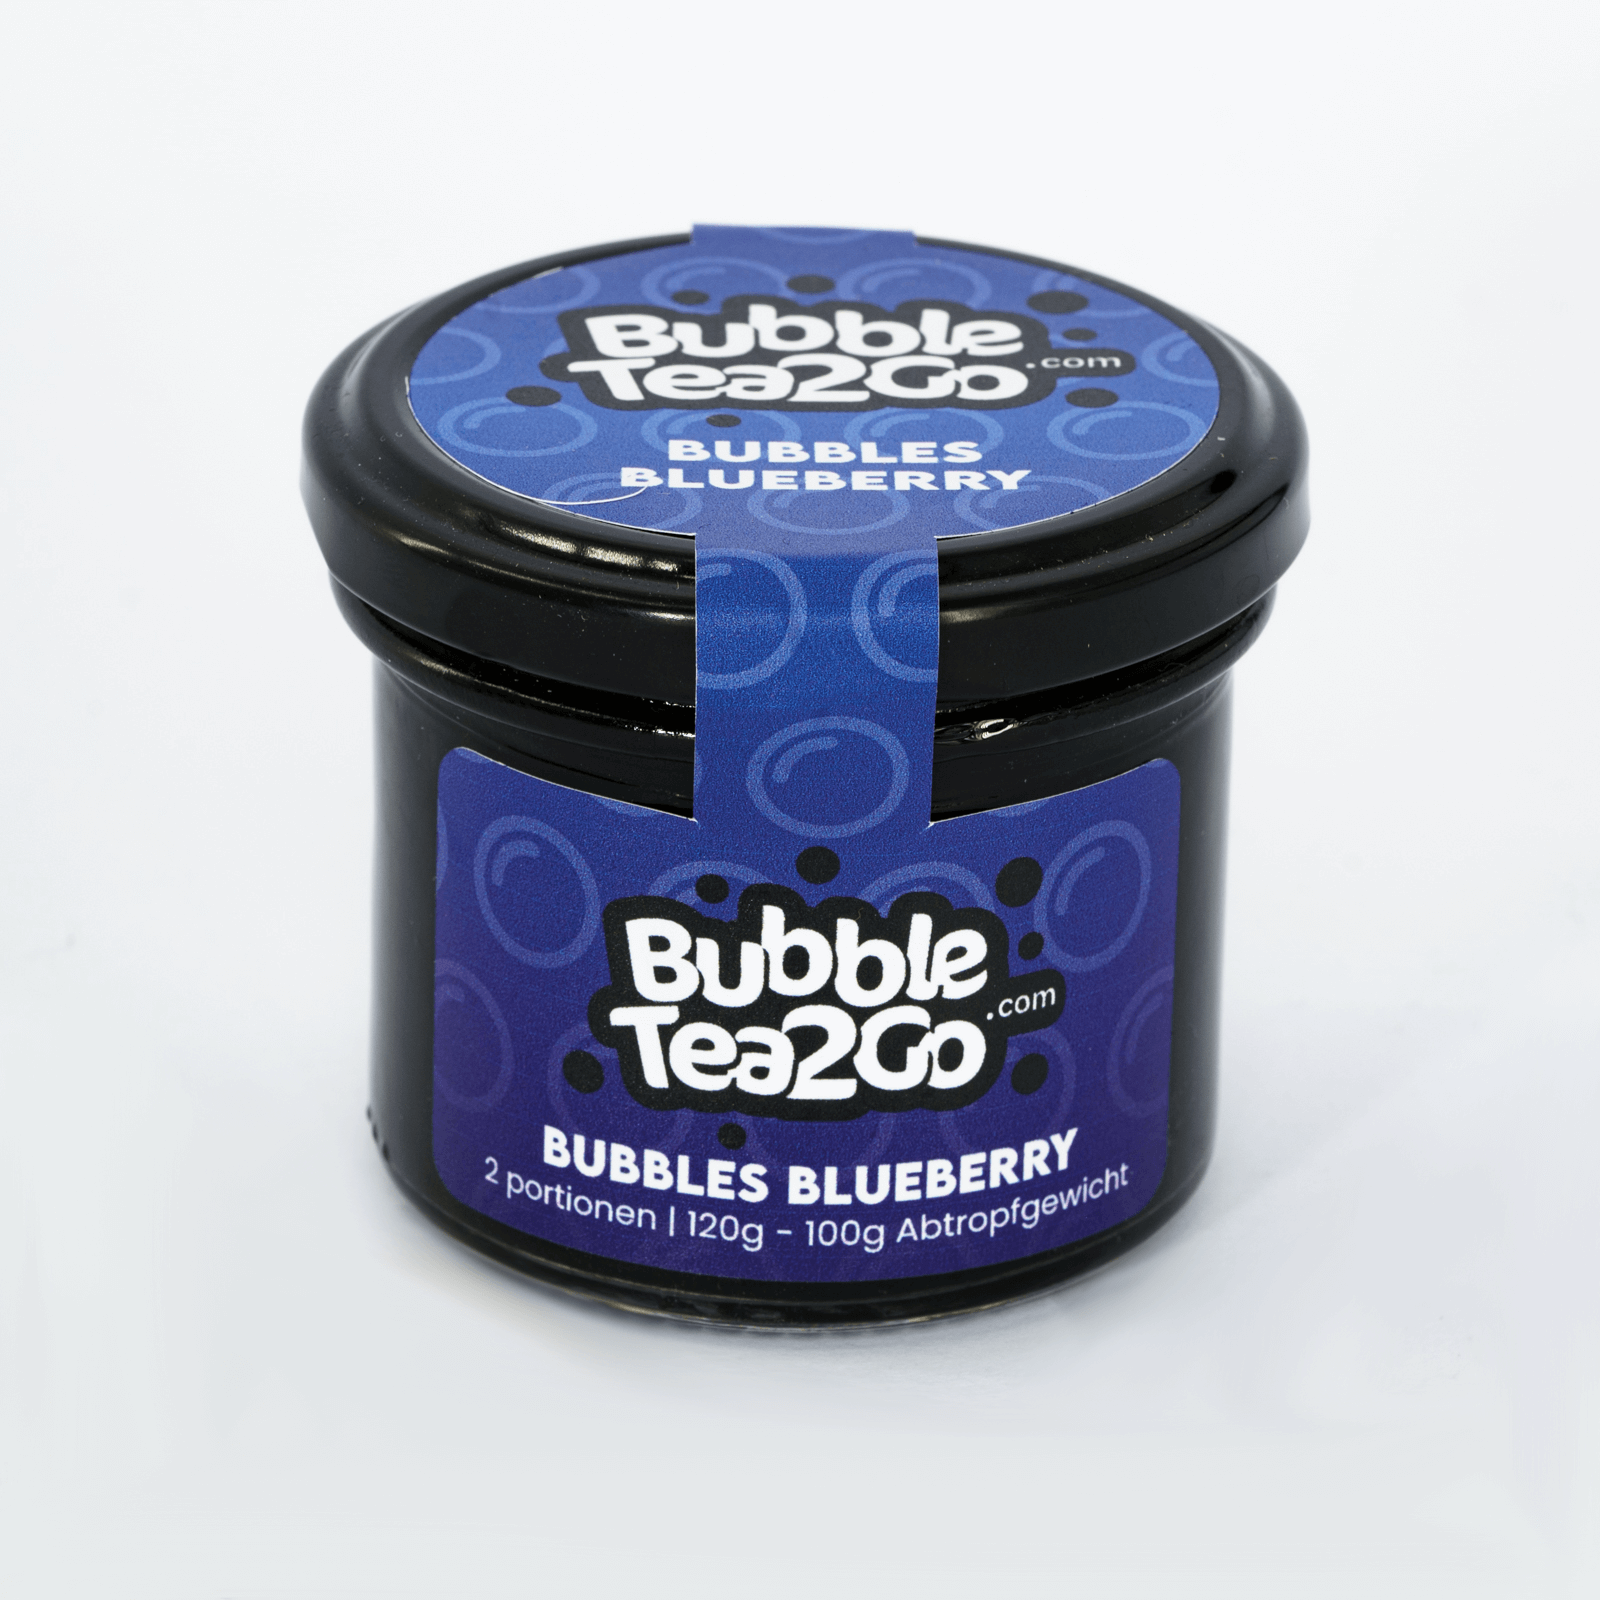 Bubbles - Blueberry 2 Portionen